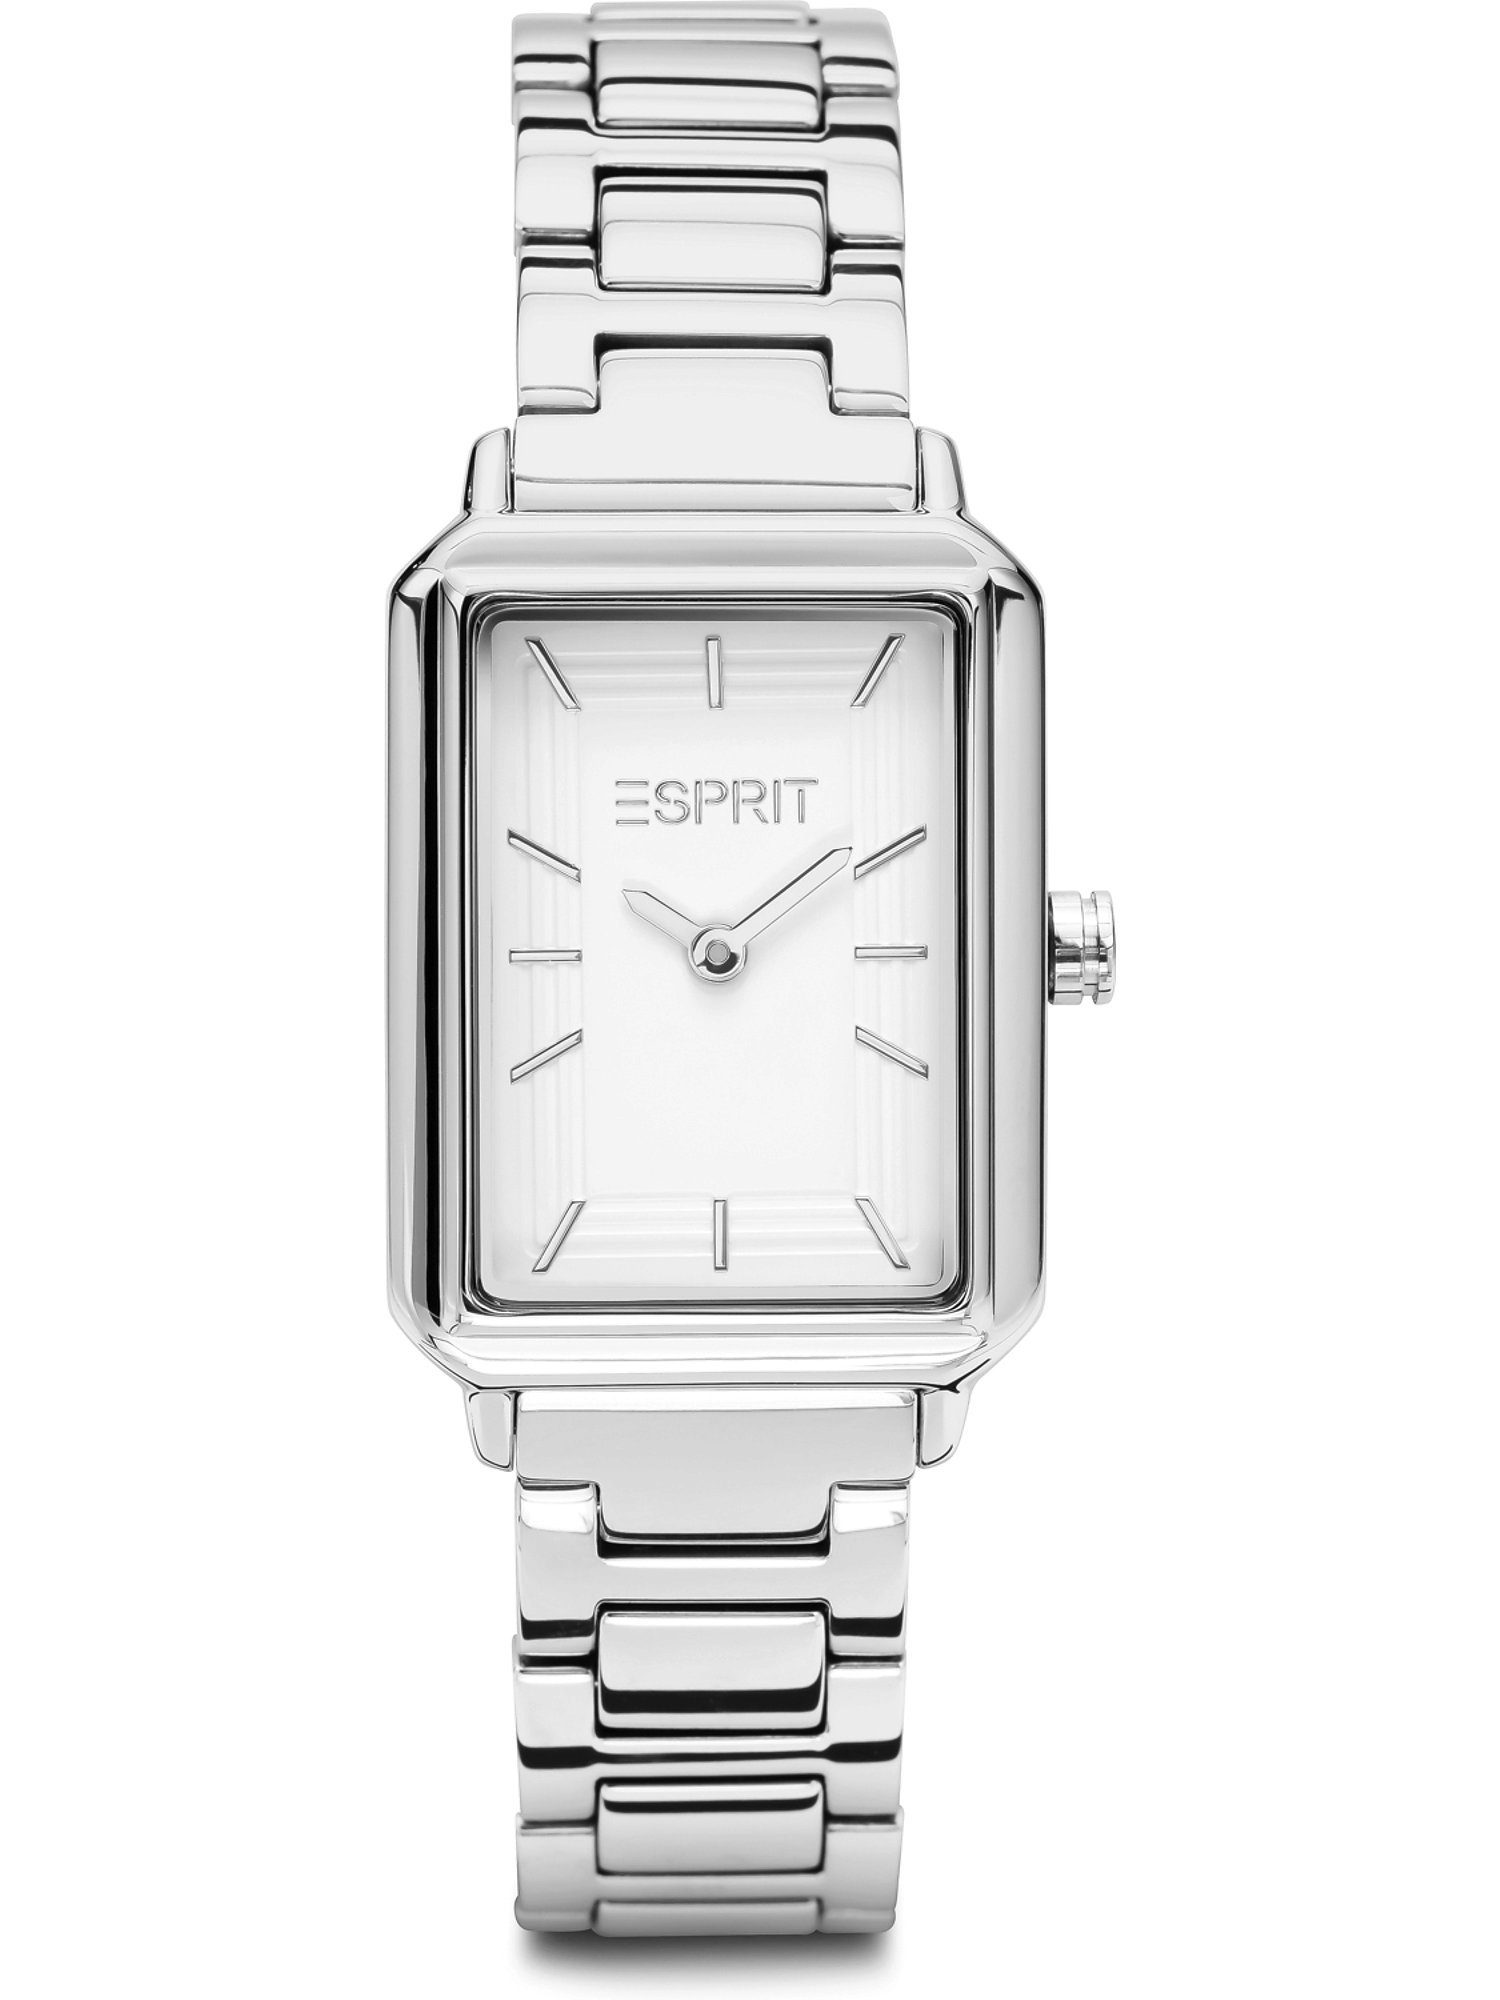 Esprit Quarzuhr ESPRIT Damen-Uhren Analog Quarz, Klassikuhr silber, weiß